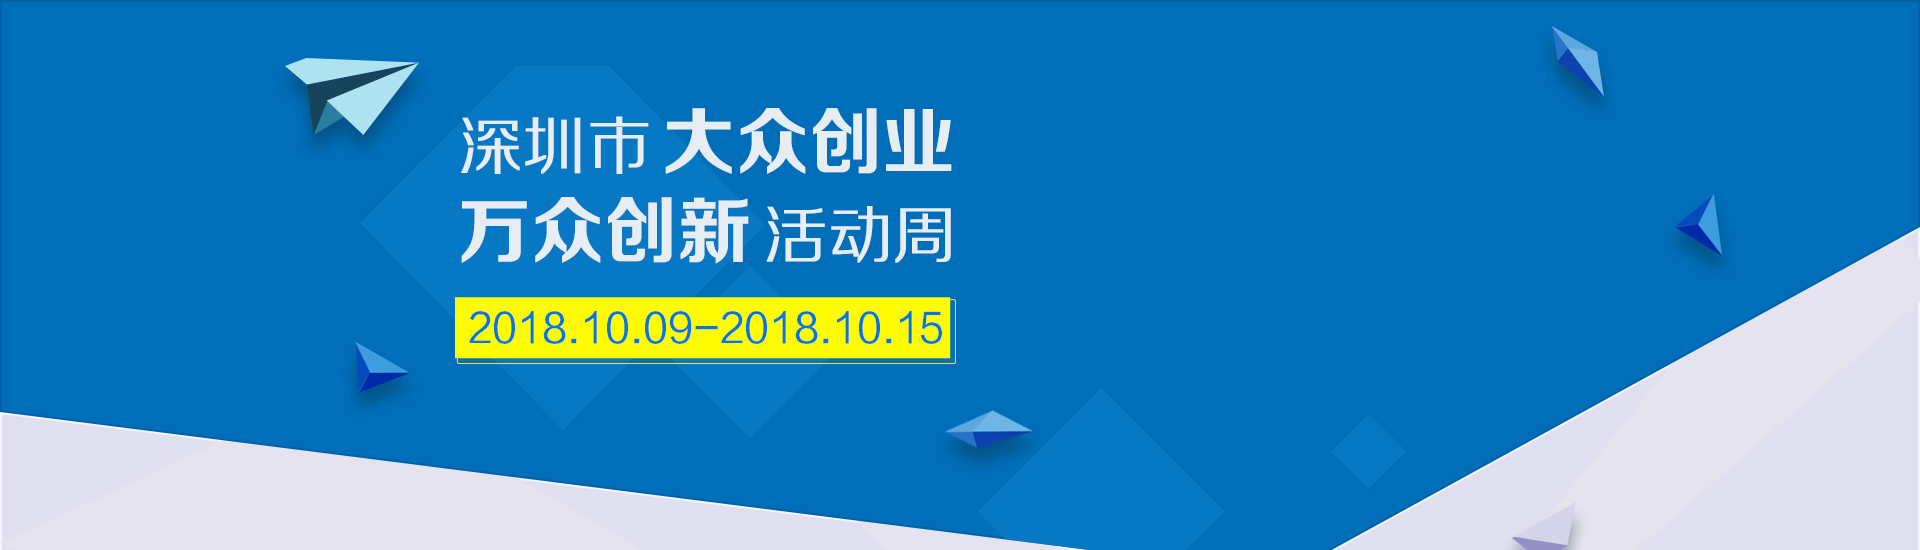 深圳市小微企业政策宣传月